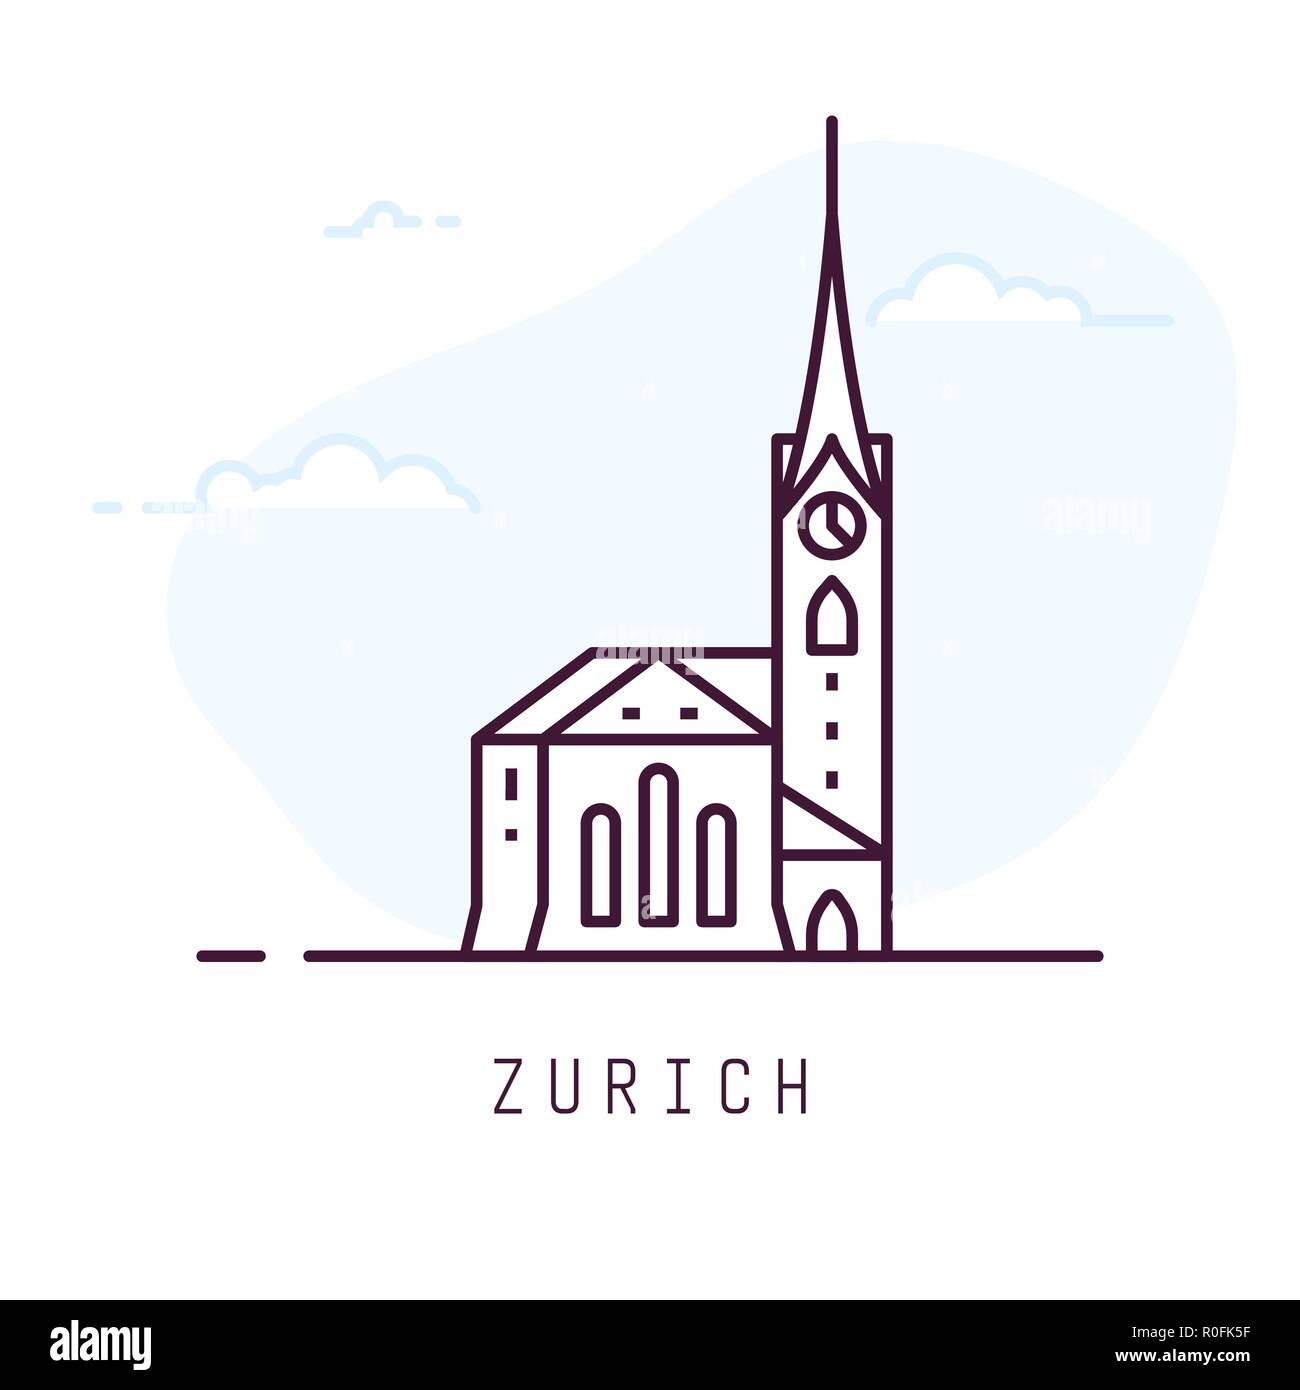 Zurich fraumunster line style Stock Vector